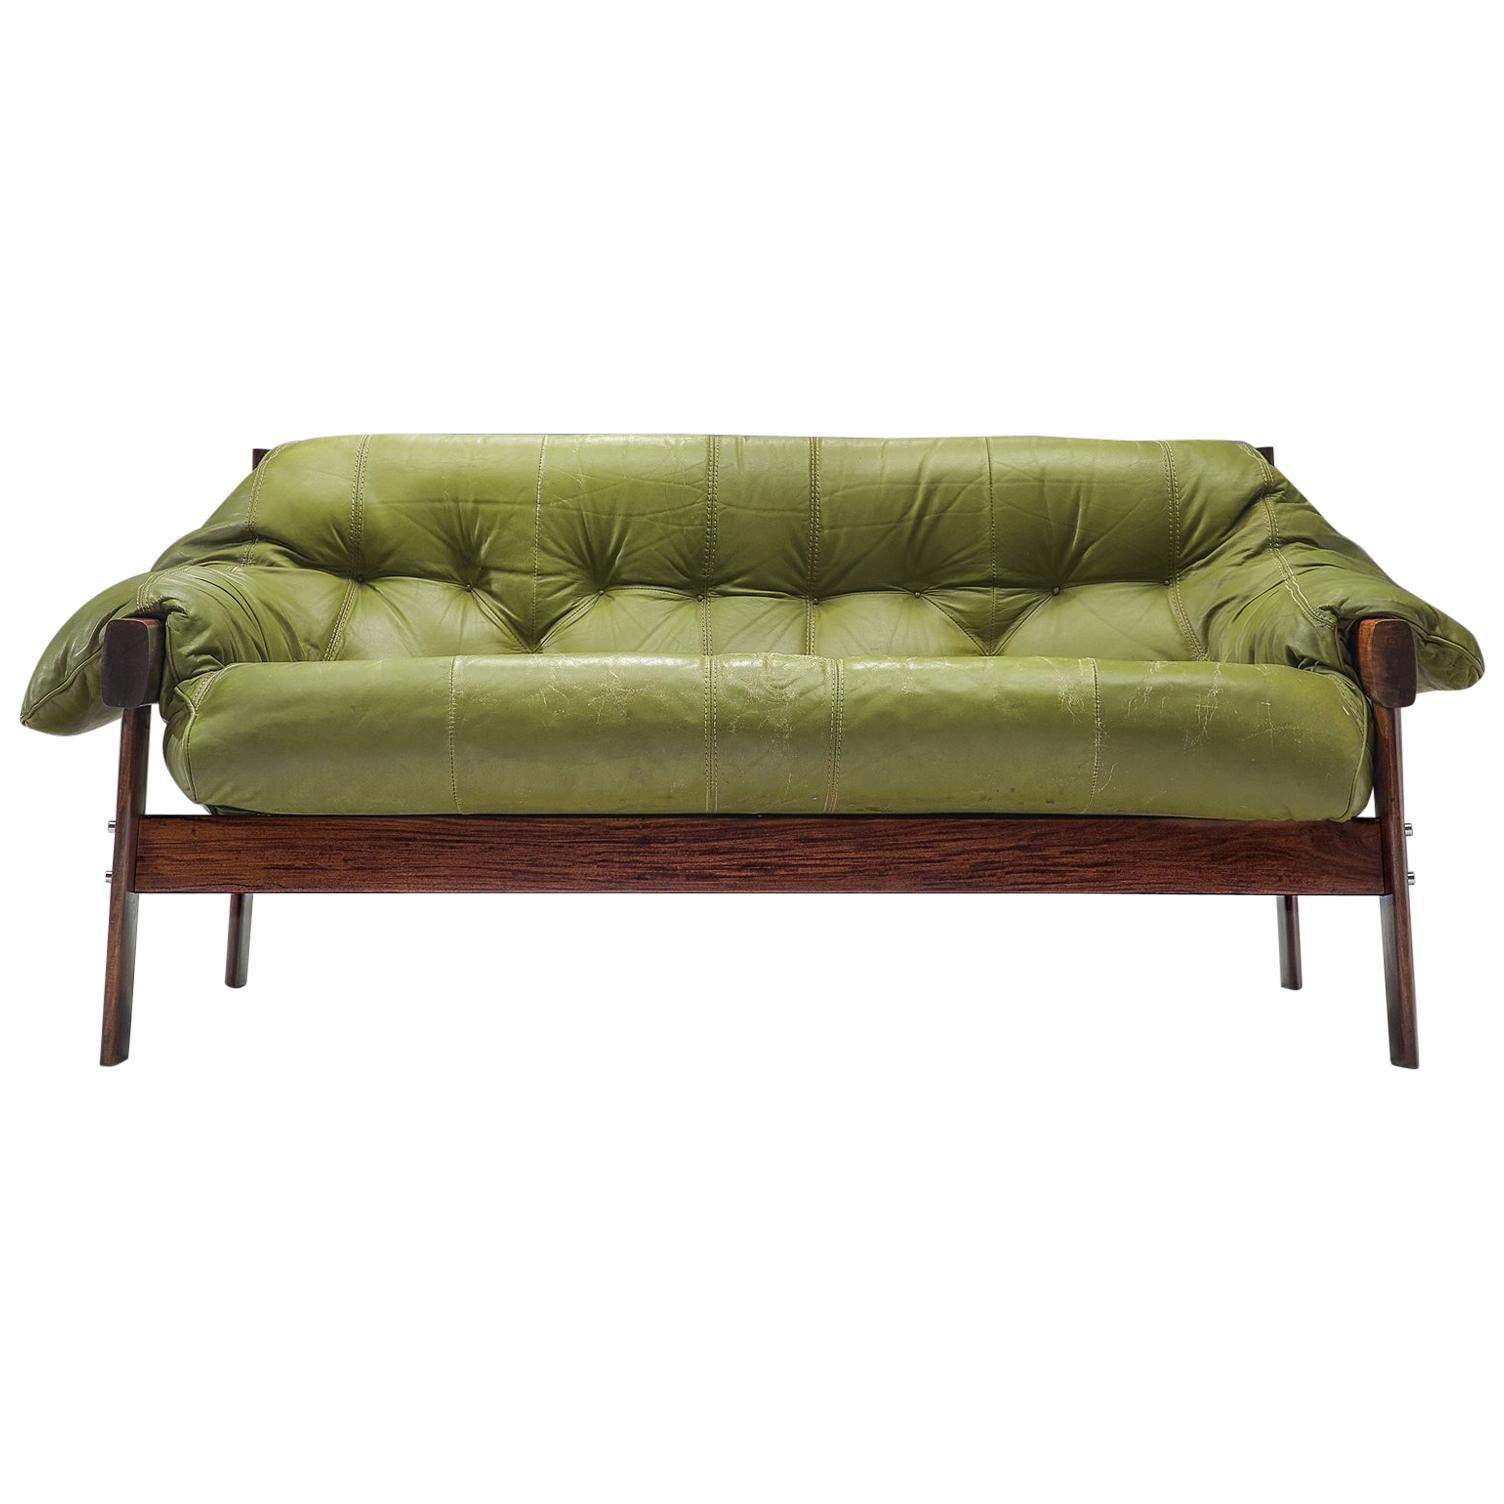 Percival Lafer Brasilianisches Sofa mit grünem Leder